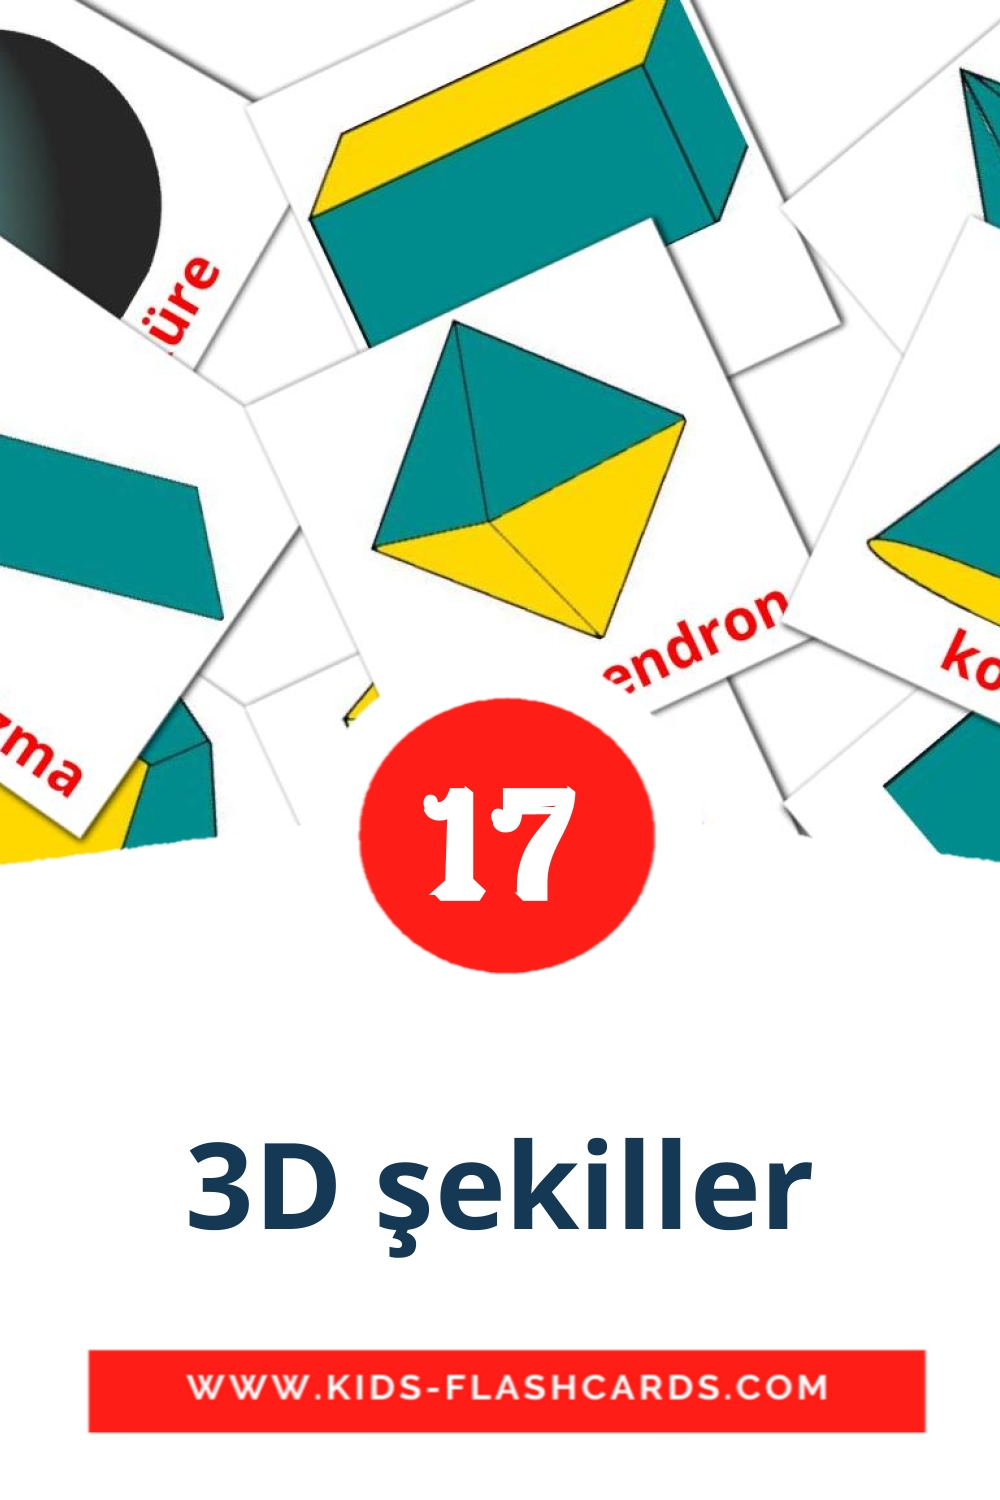 17 3D şekiller Picture Cards for Kindergarden in turkish